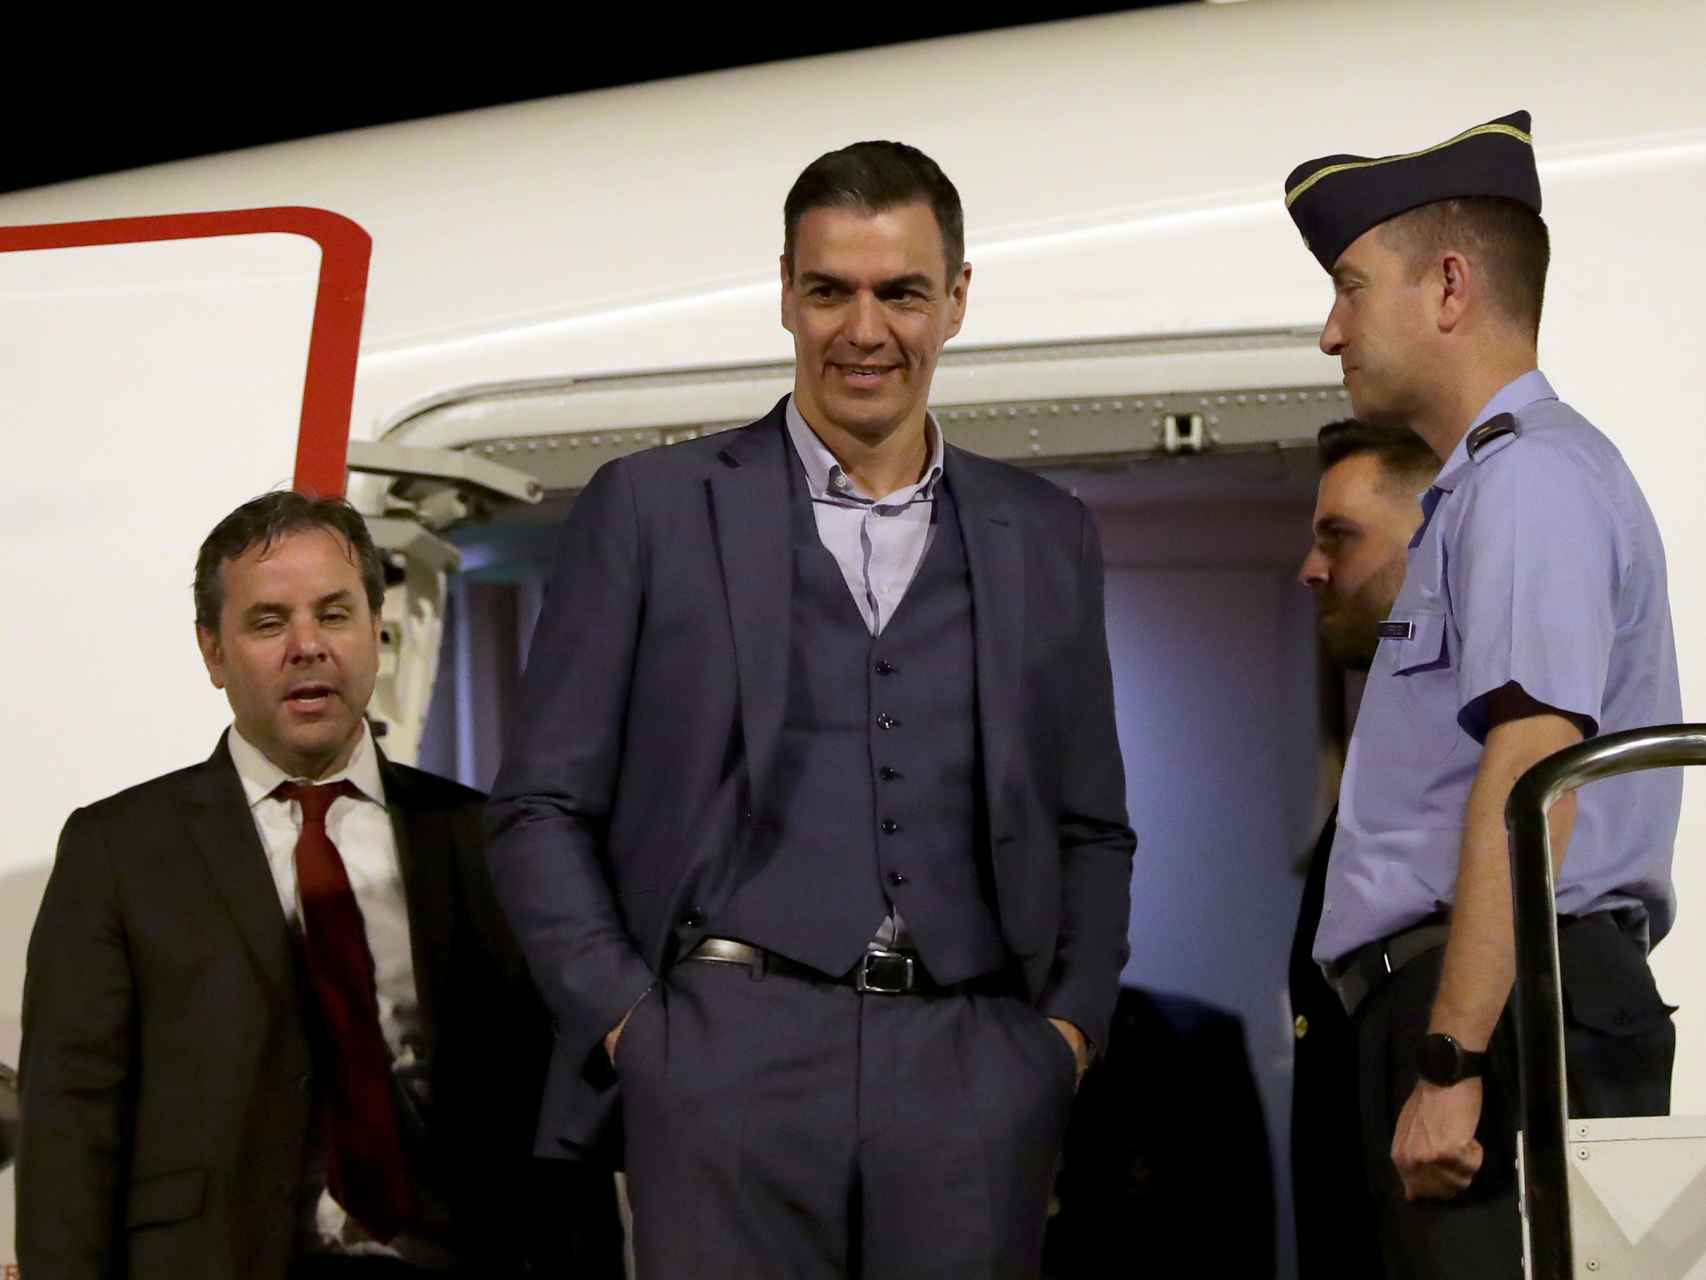 El presidente Pedro Sánchez, este miércoles en la escalerilla del avión, a su llegada a Brasilia.